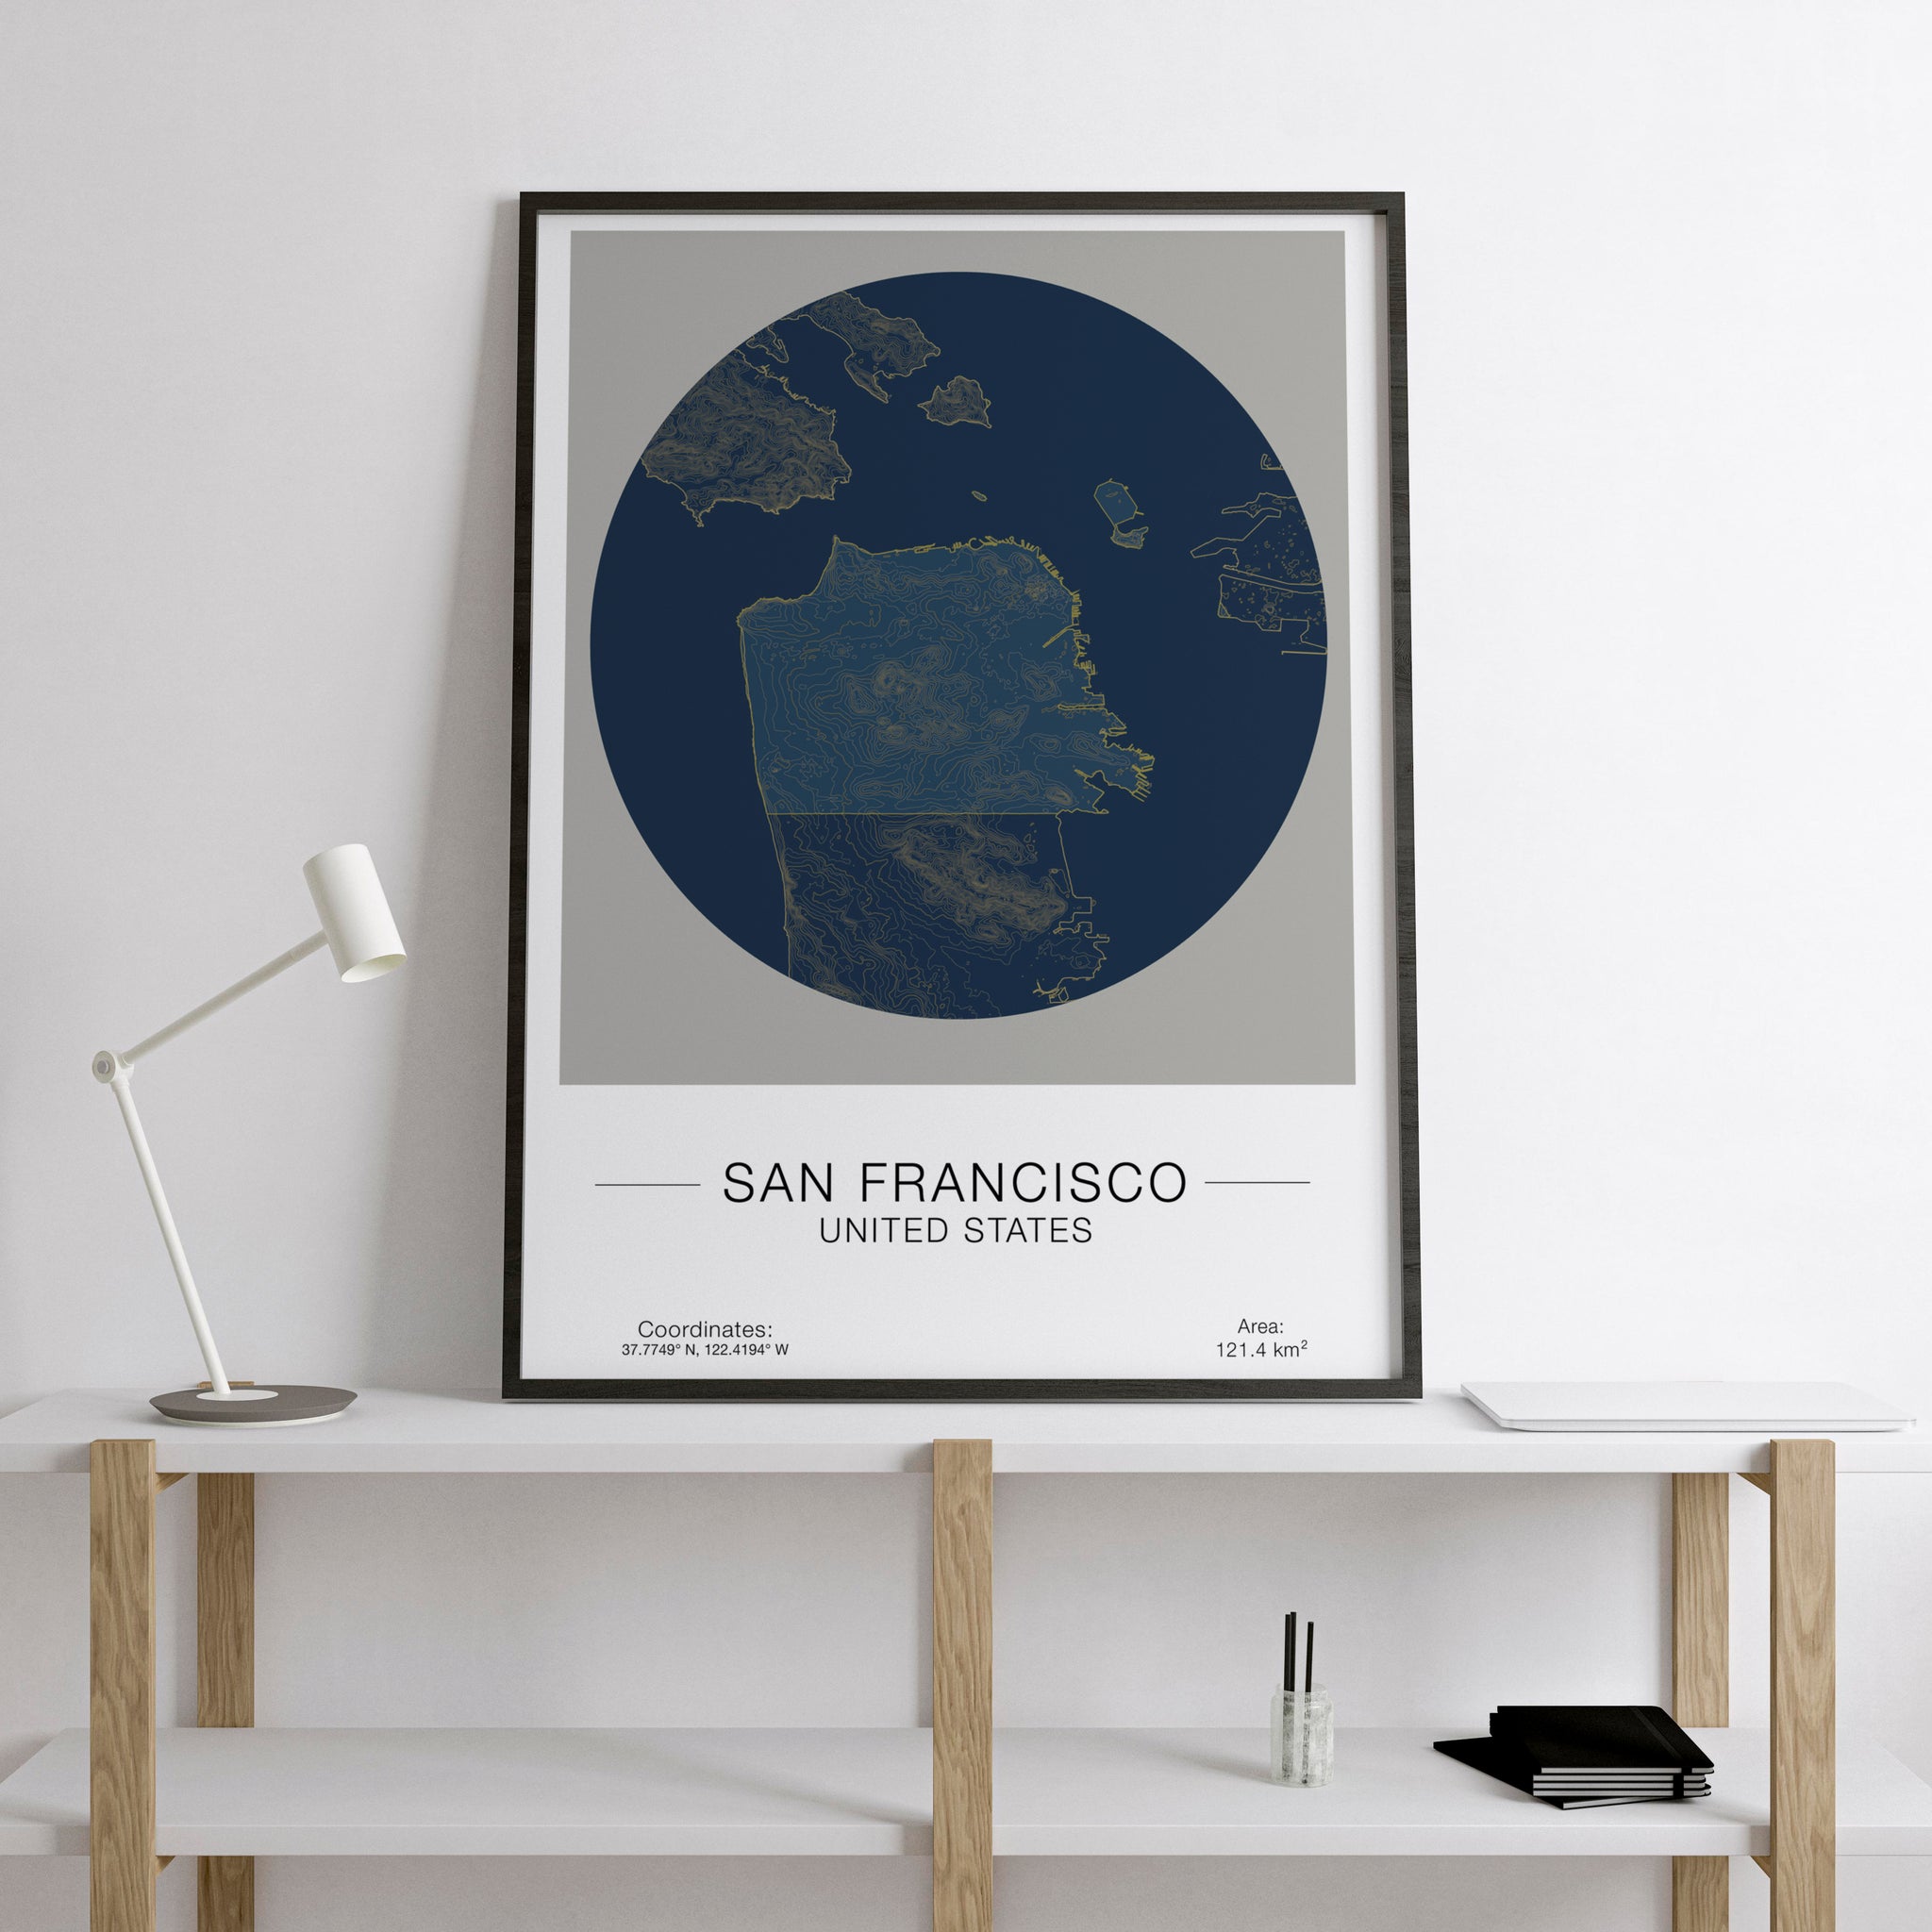 Circular San Francisco map artwork in a golden frame.